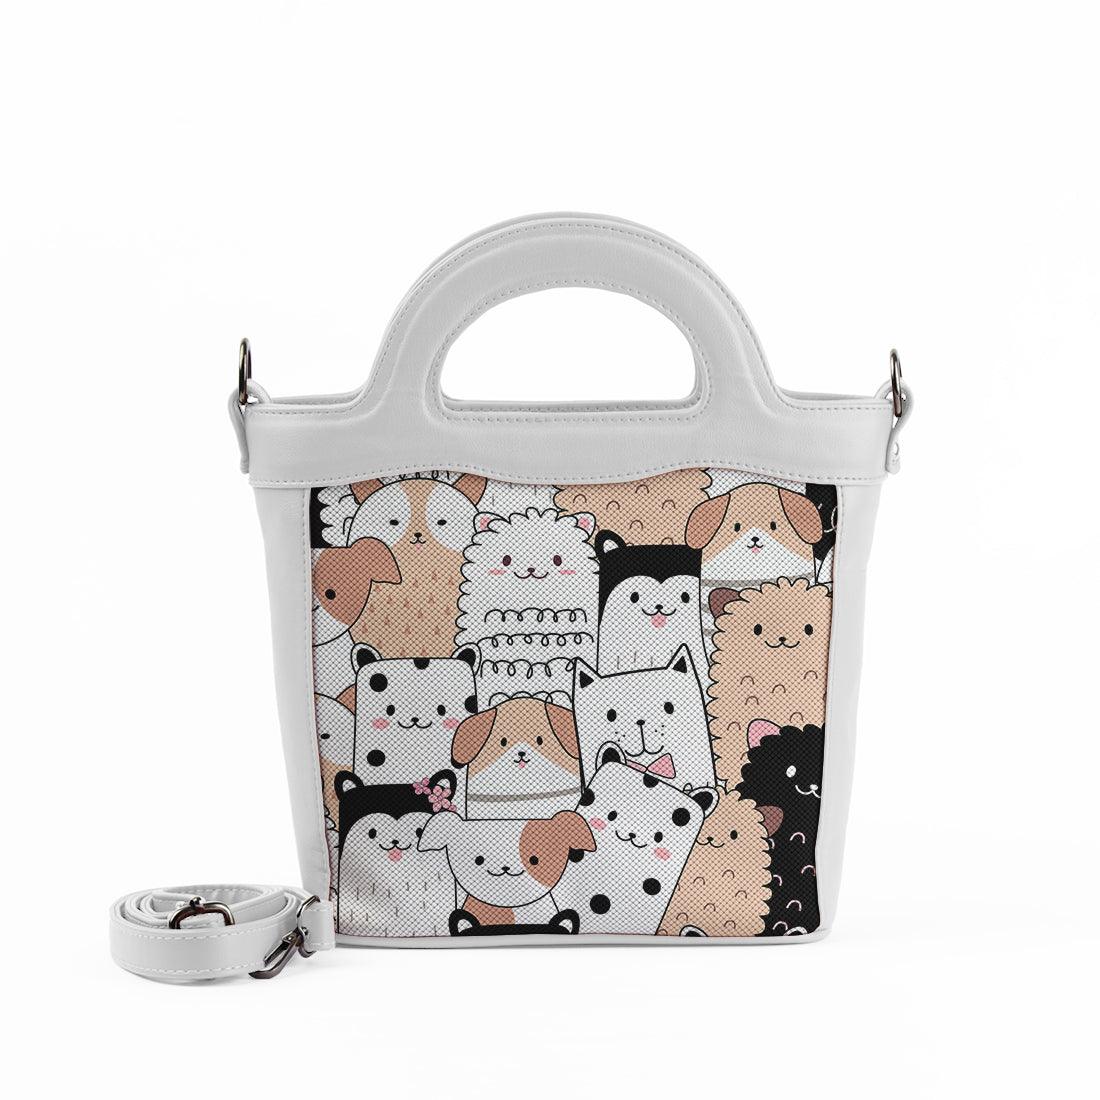 White Top Handle Handbag Cute Pets - CANVAEGYPT